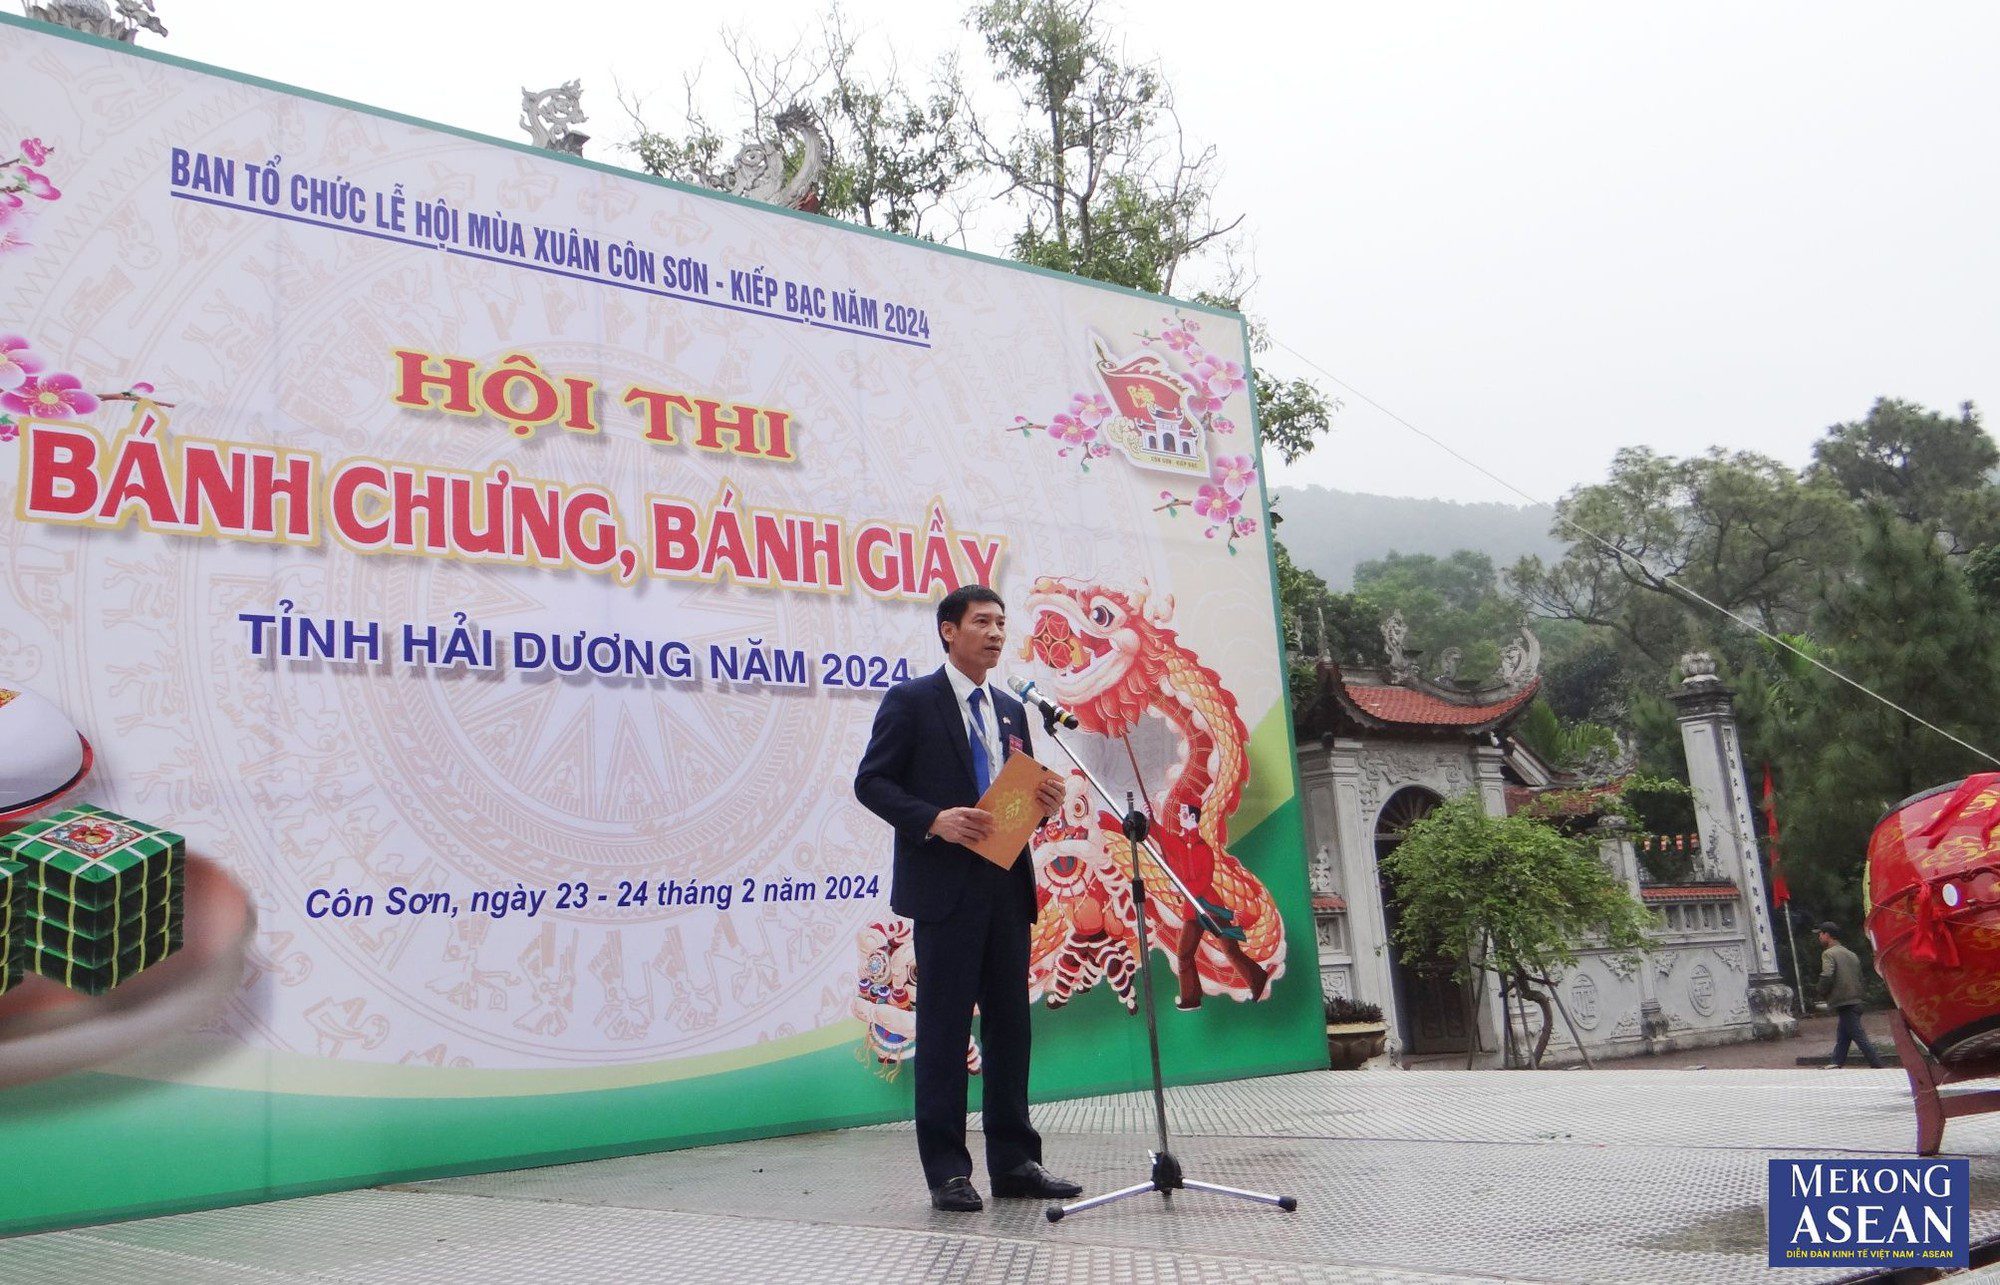 Phó Giám đốc Sở Văn hóa, Thể thao và Du lịch tỉnh Hải Dương Nguyễn Trường Thắng phát biểu khai mạc hội thi.